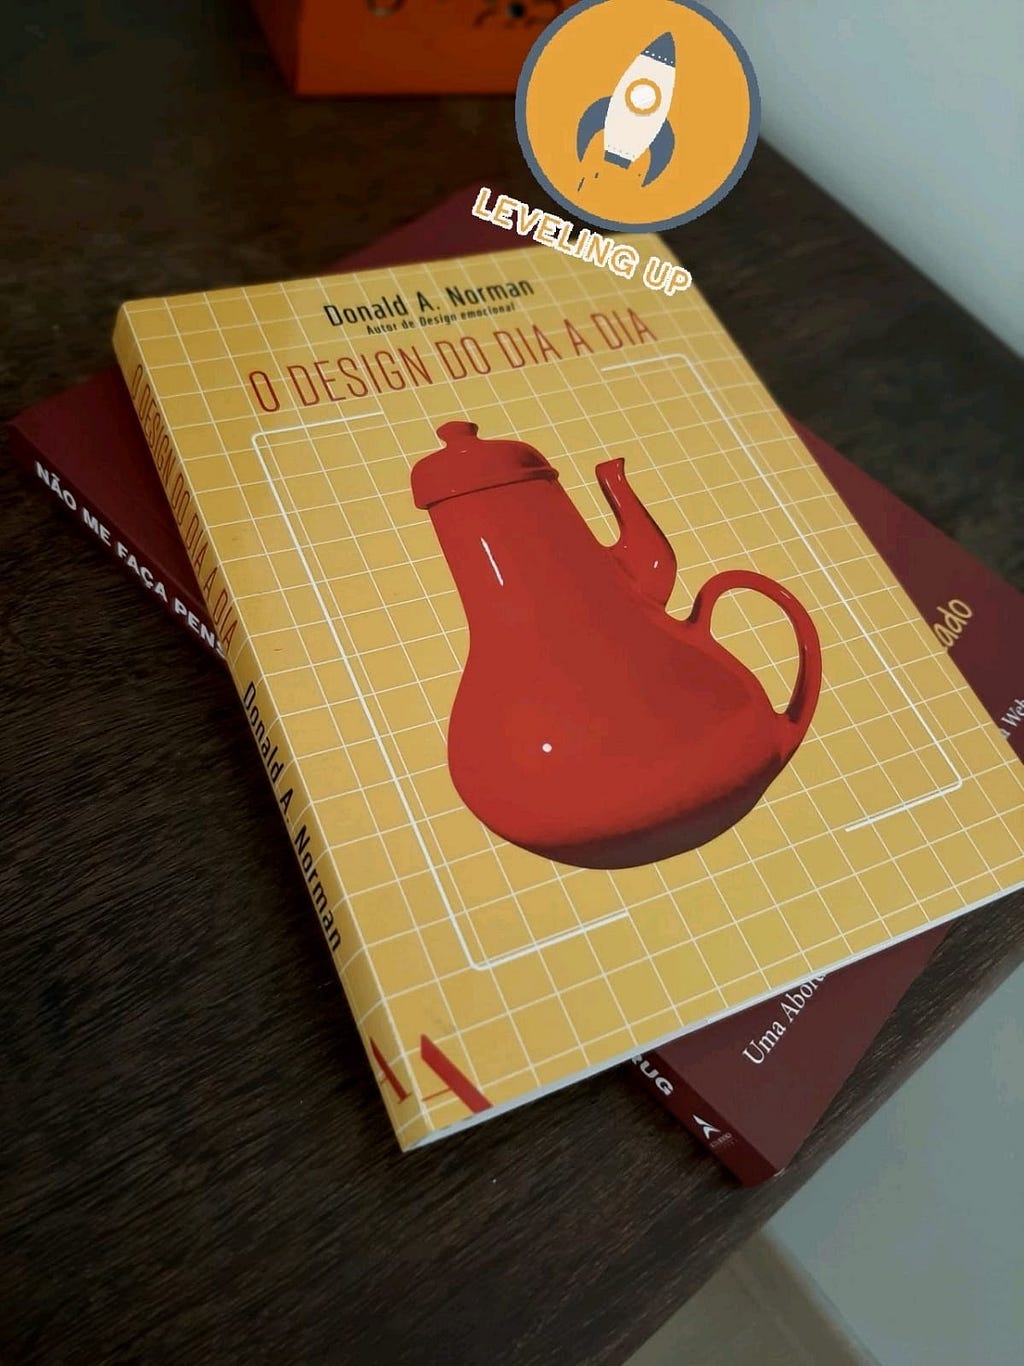 Foto dos livros "O Design do Dia a Dia" do Donald Norman e "Não me faça pensar", do Steve Krug.